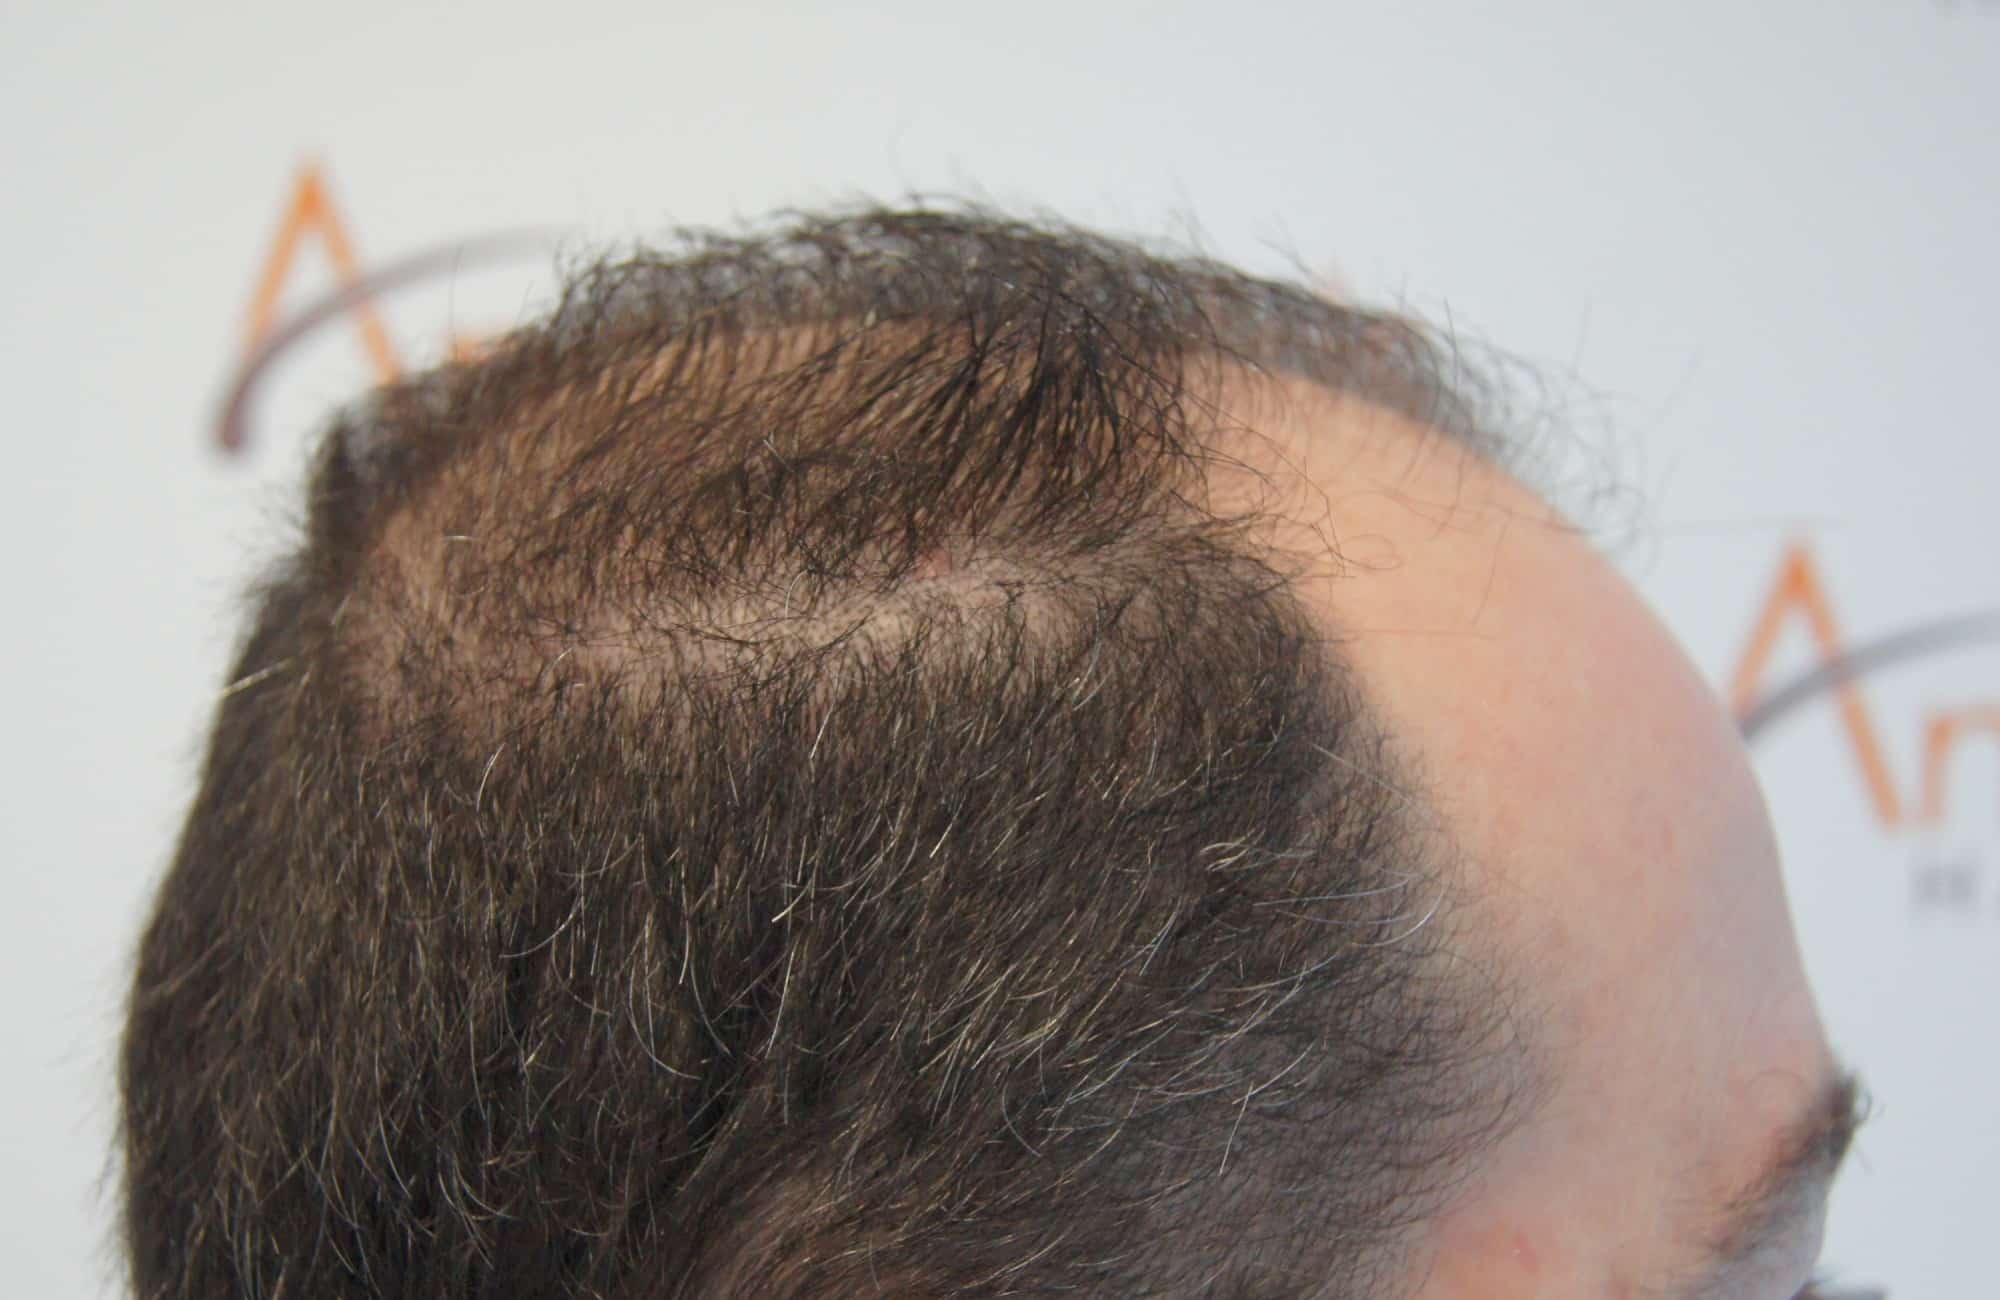 περιστατικο πριν τη μεταμόσχευση μαλλιων στην anastasakis hair clinic 6